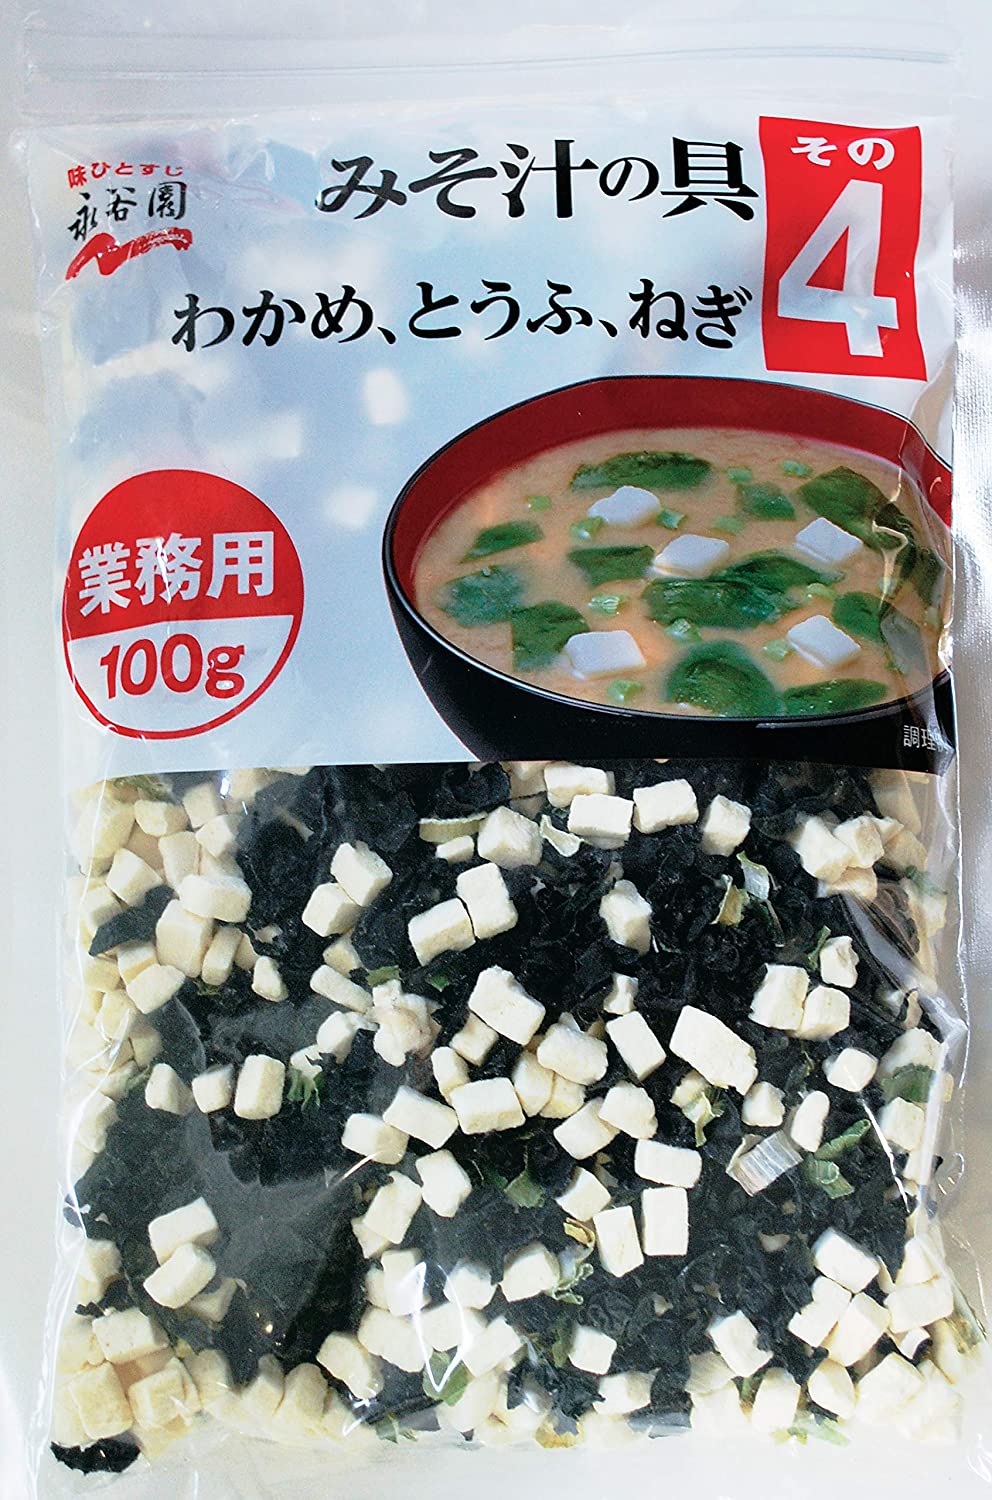 Miso Soup - Наполнение для мисо супа, на 100 порций, 100 г.